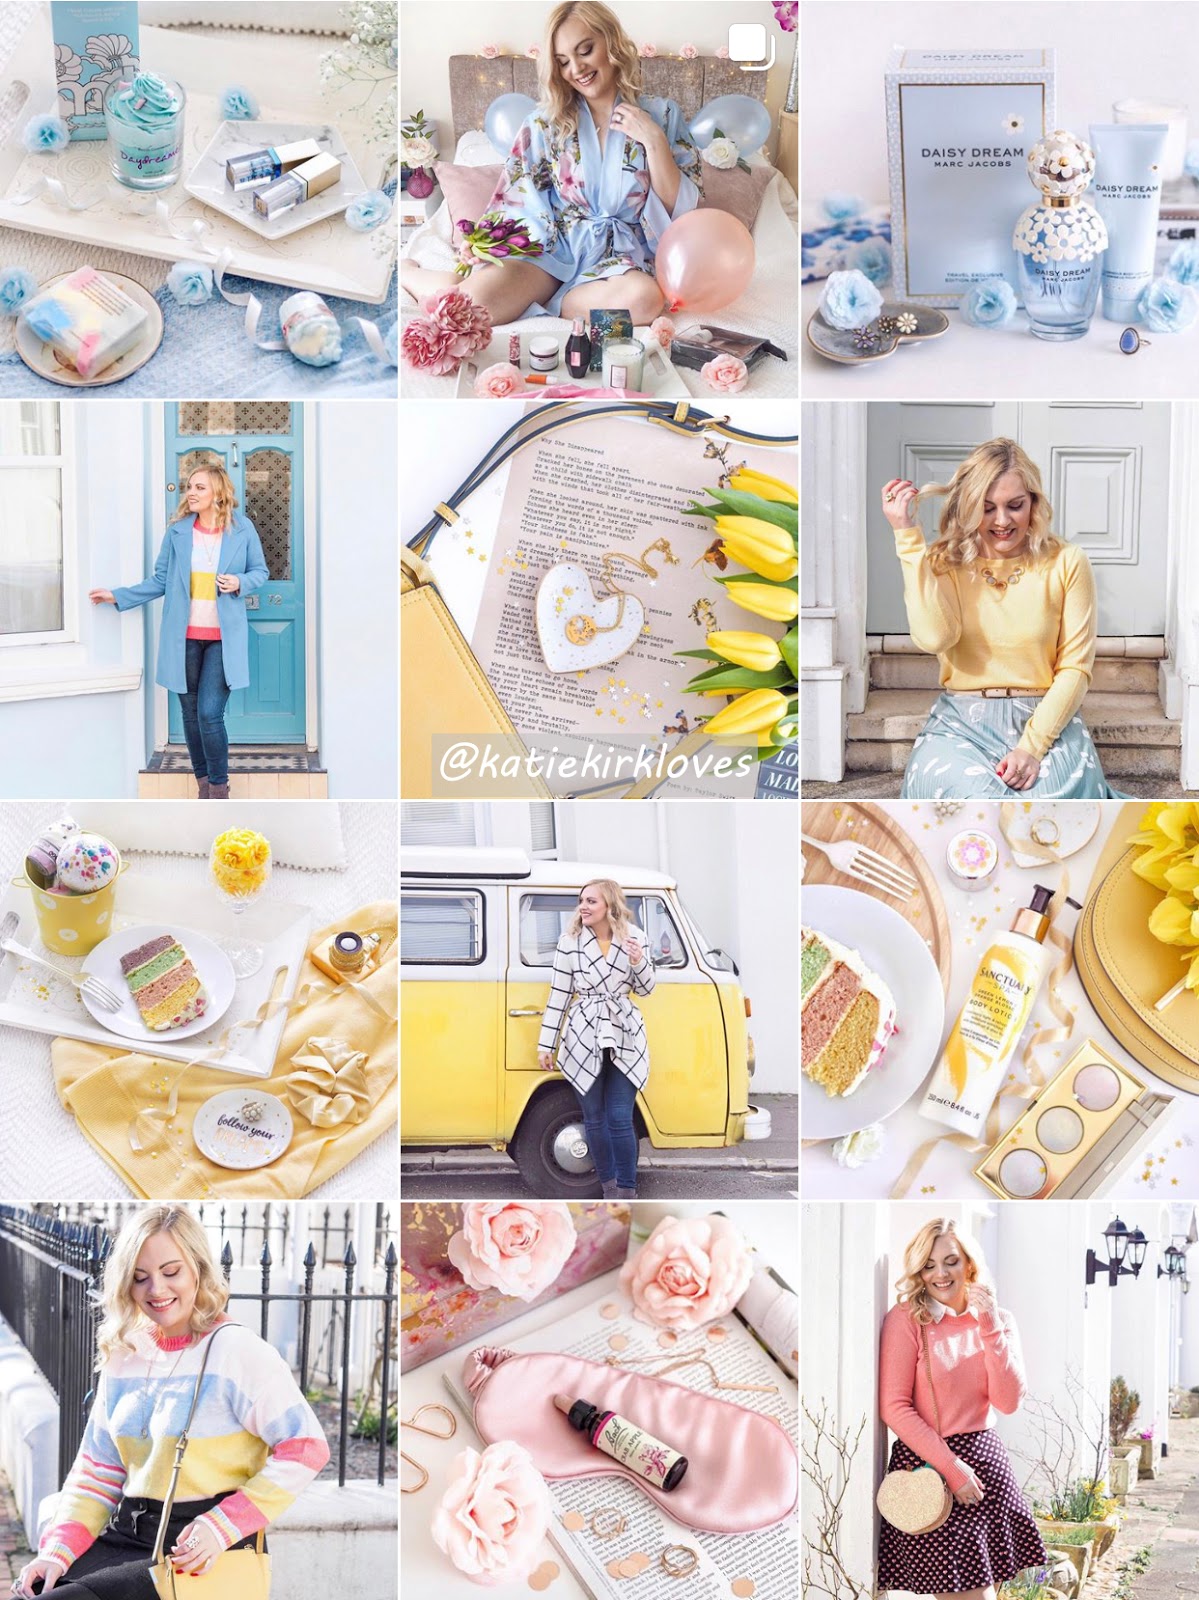 How I Plan My Instagram Themes, Katie Kirk Loves, UK Blogger, Instagram, Instagram Tips, Instagram Content, Instagram Theme, Instagram Influencer, Instagram Aesthetic, Photography, UK Fashion Blogger, UK Beauty Blogger, UK Lifestyle Blogger